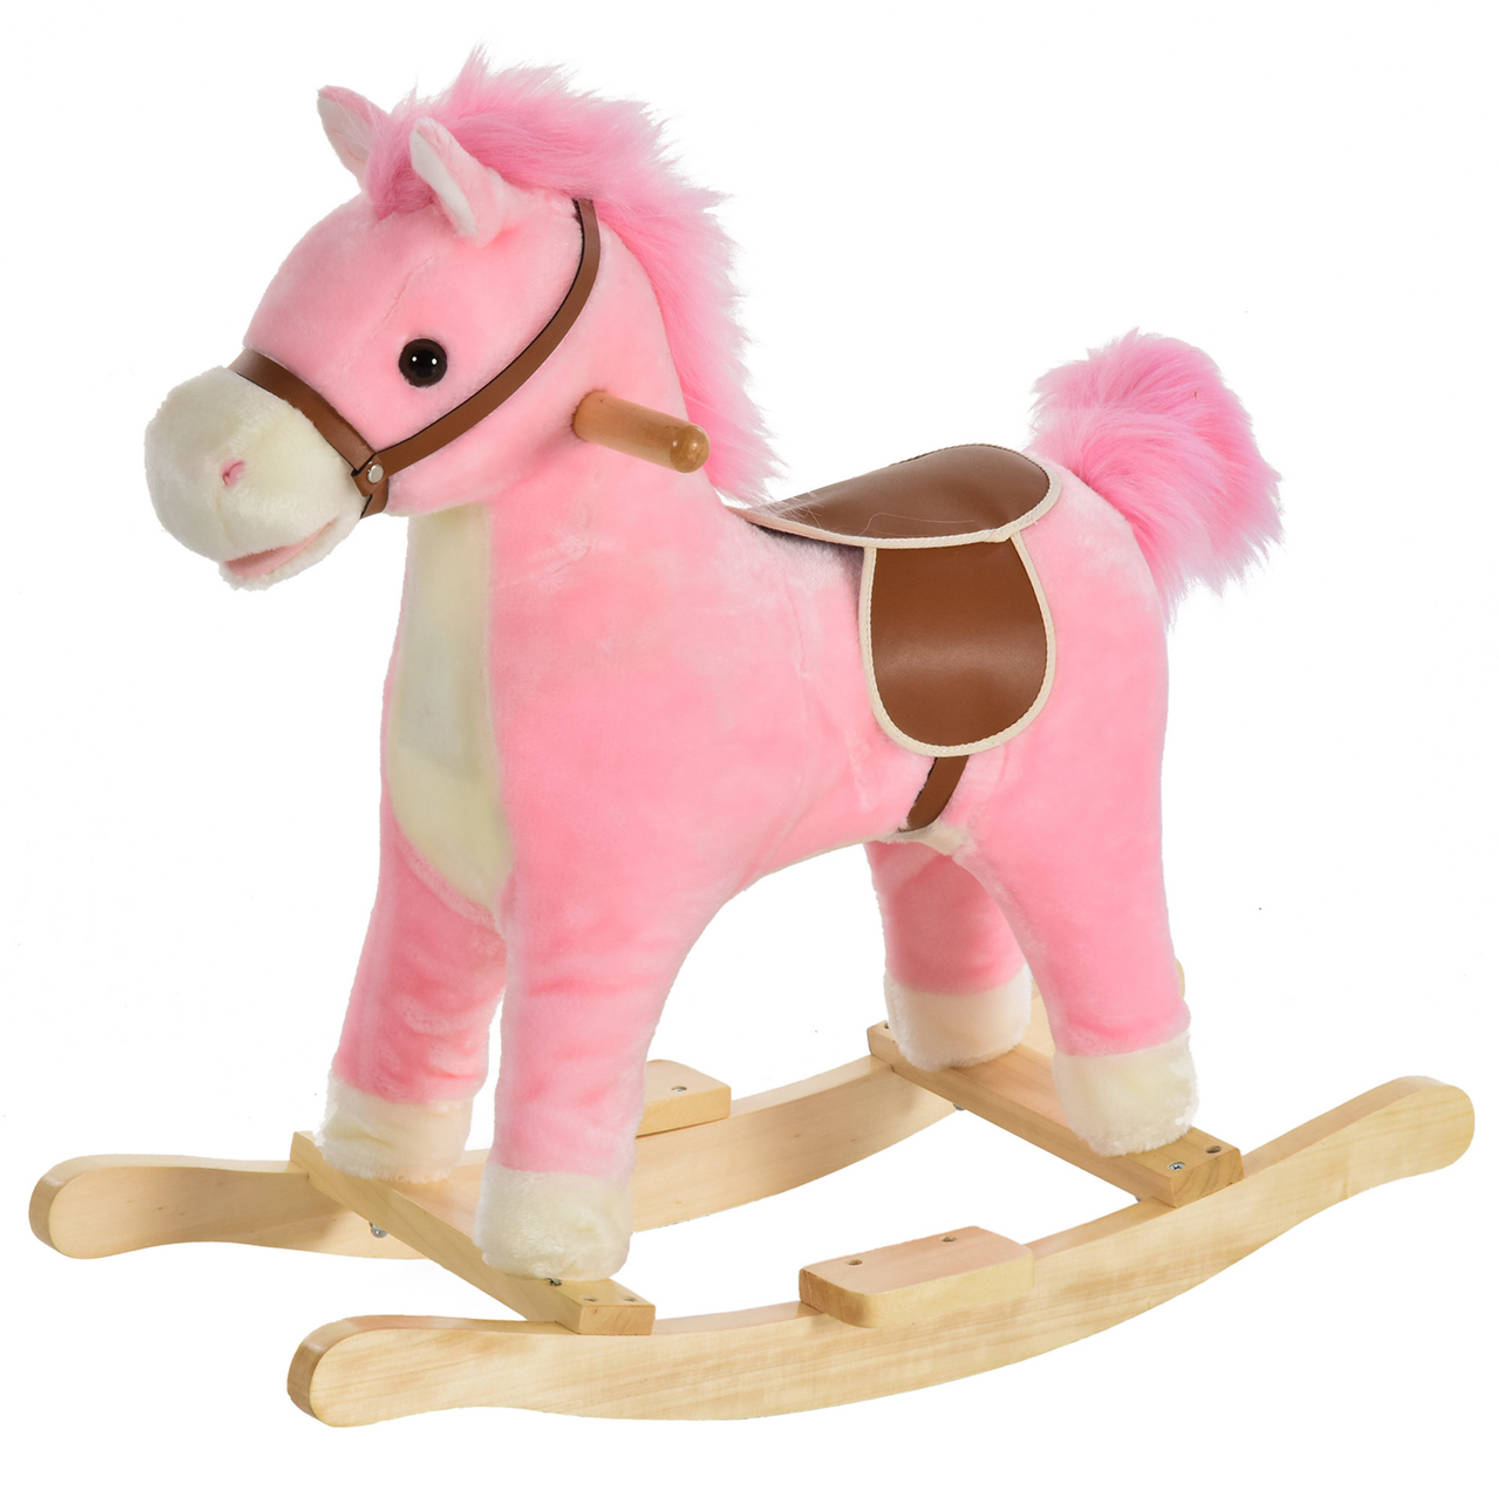 Hobbeldier Hobbelpaard Paarden Speelgoed Voor 36-72 Maanden 65l X 32,5w X 61h Cm Roze